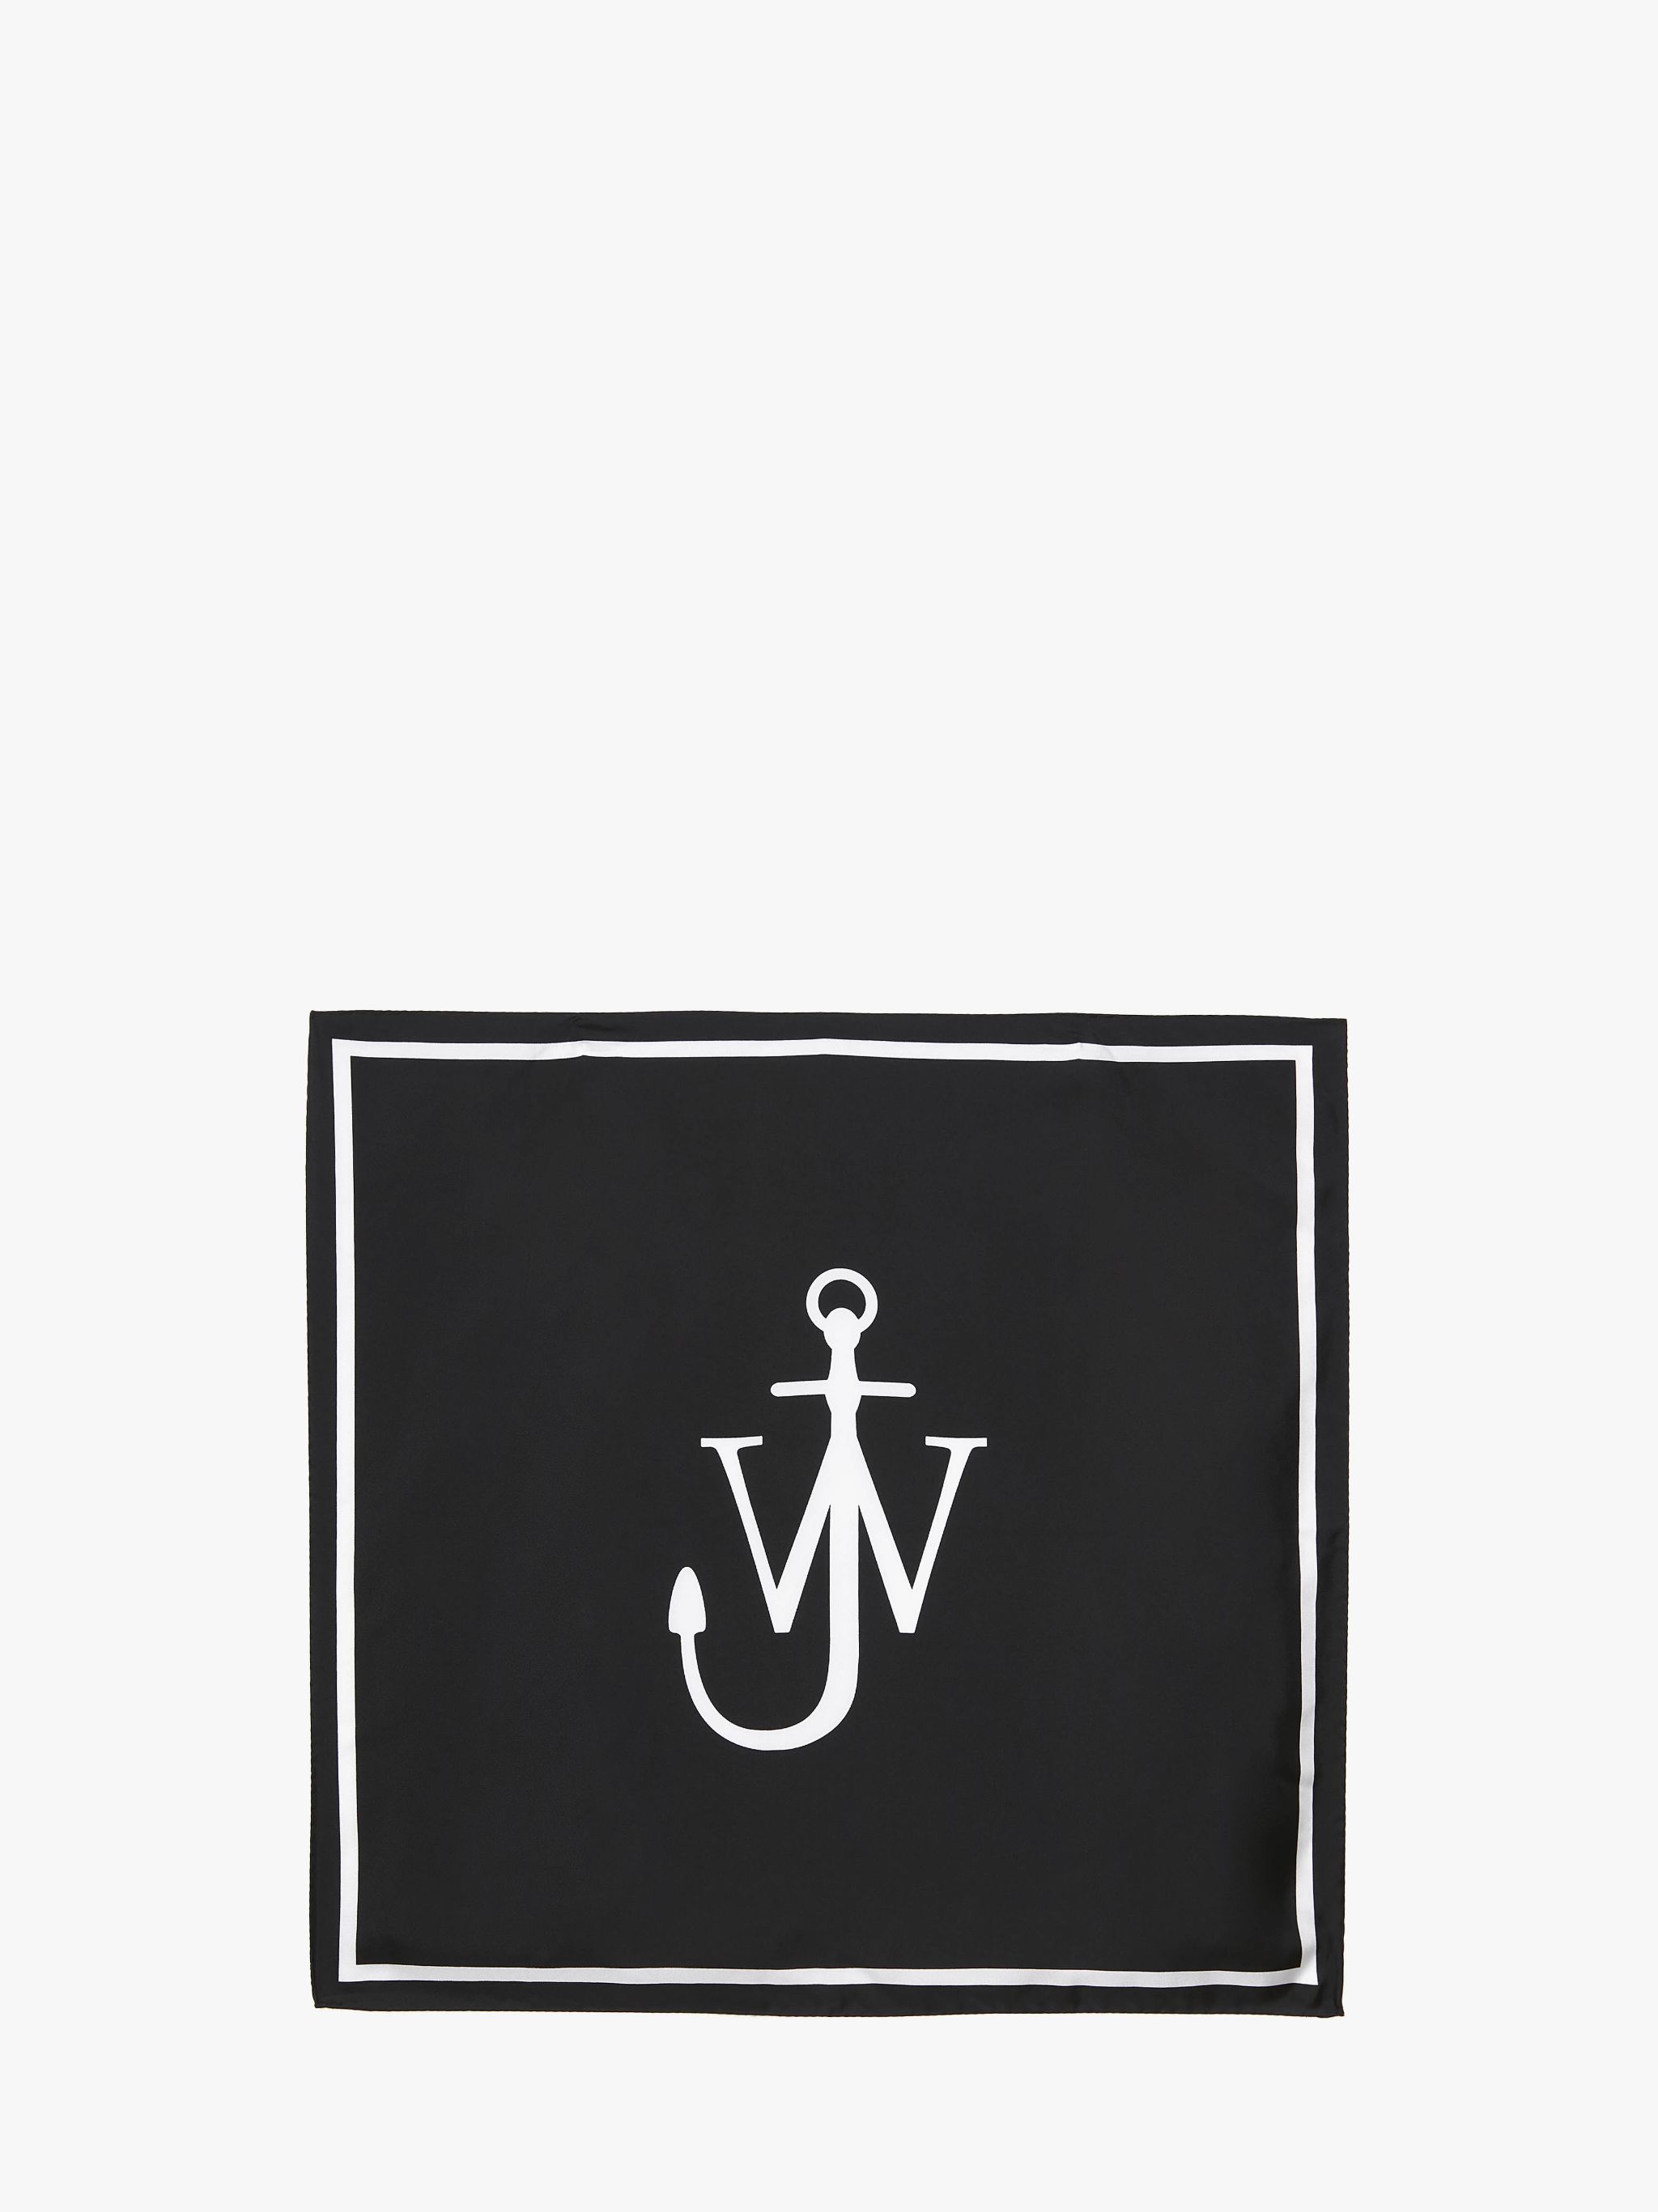 Шелковый платок с логотипом JW Anderson, белый женский шелковый шарф matagorda маленький шелковый шарф 60 см с изображением листьев масляной живописи